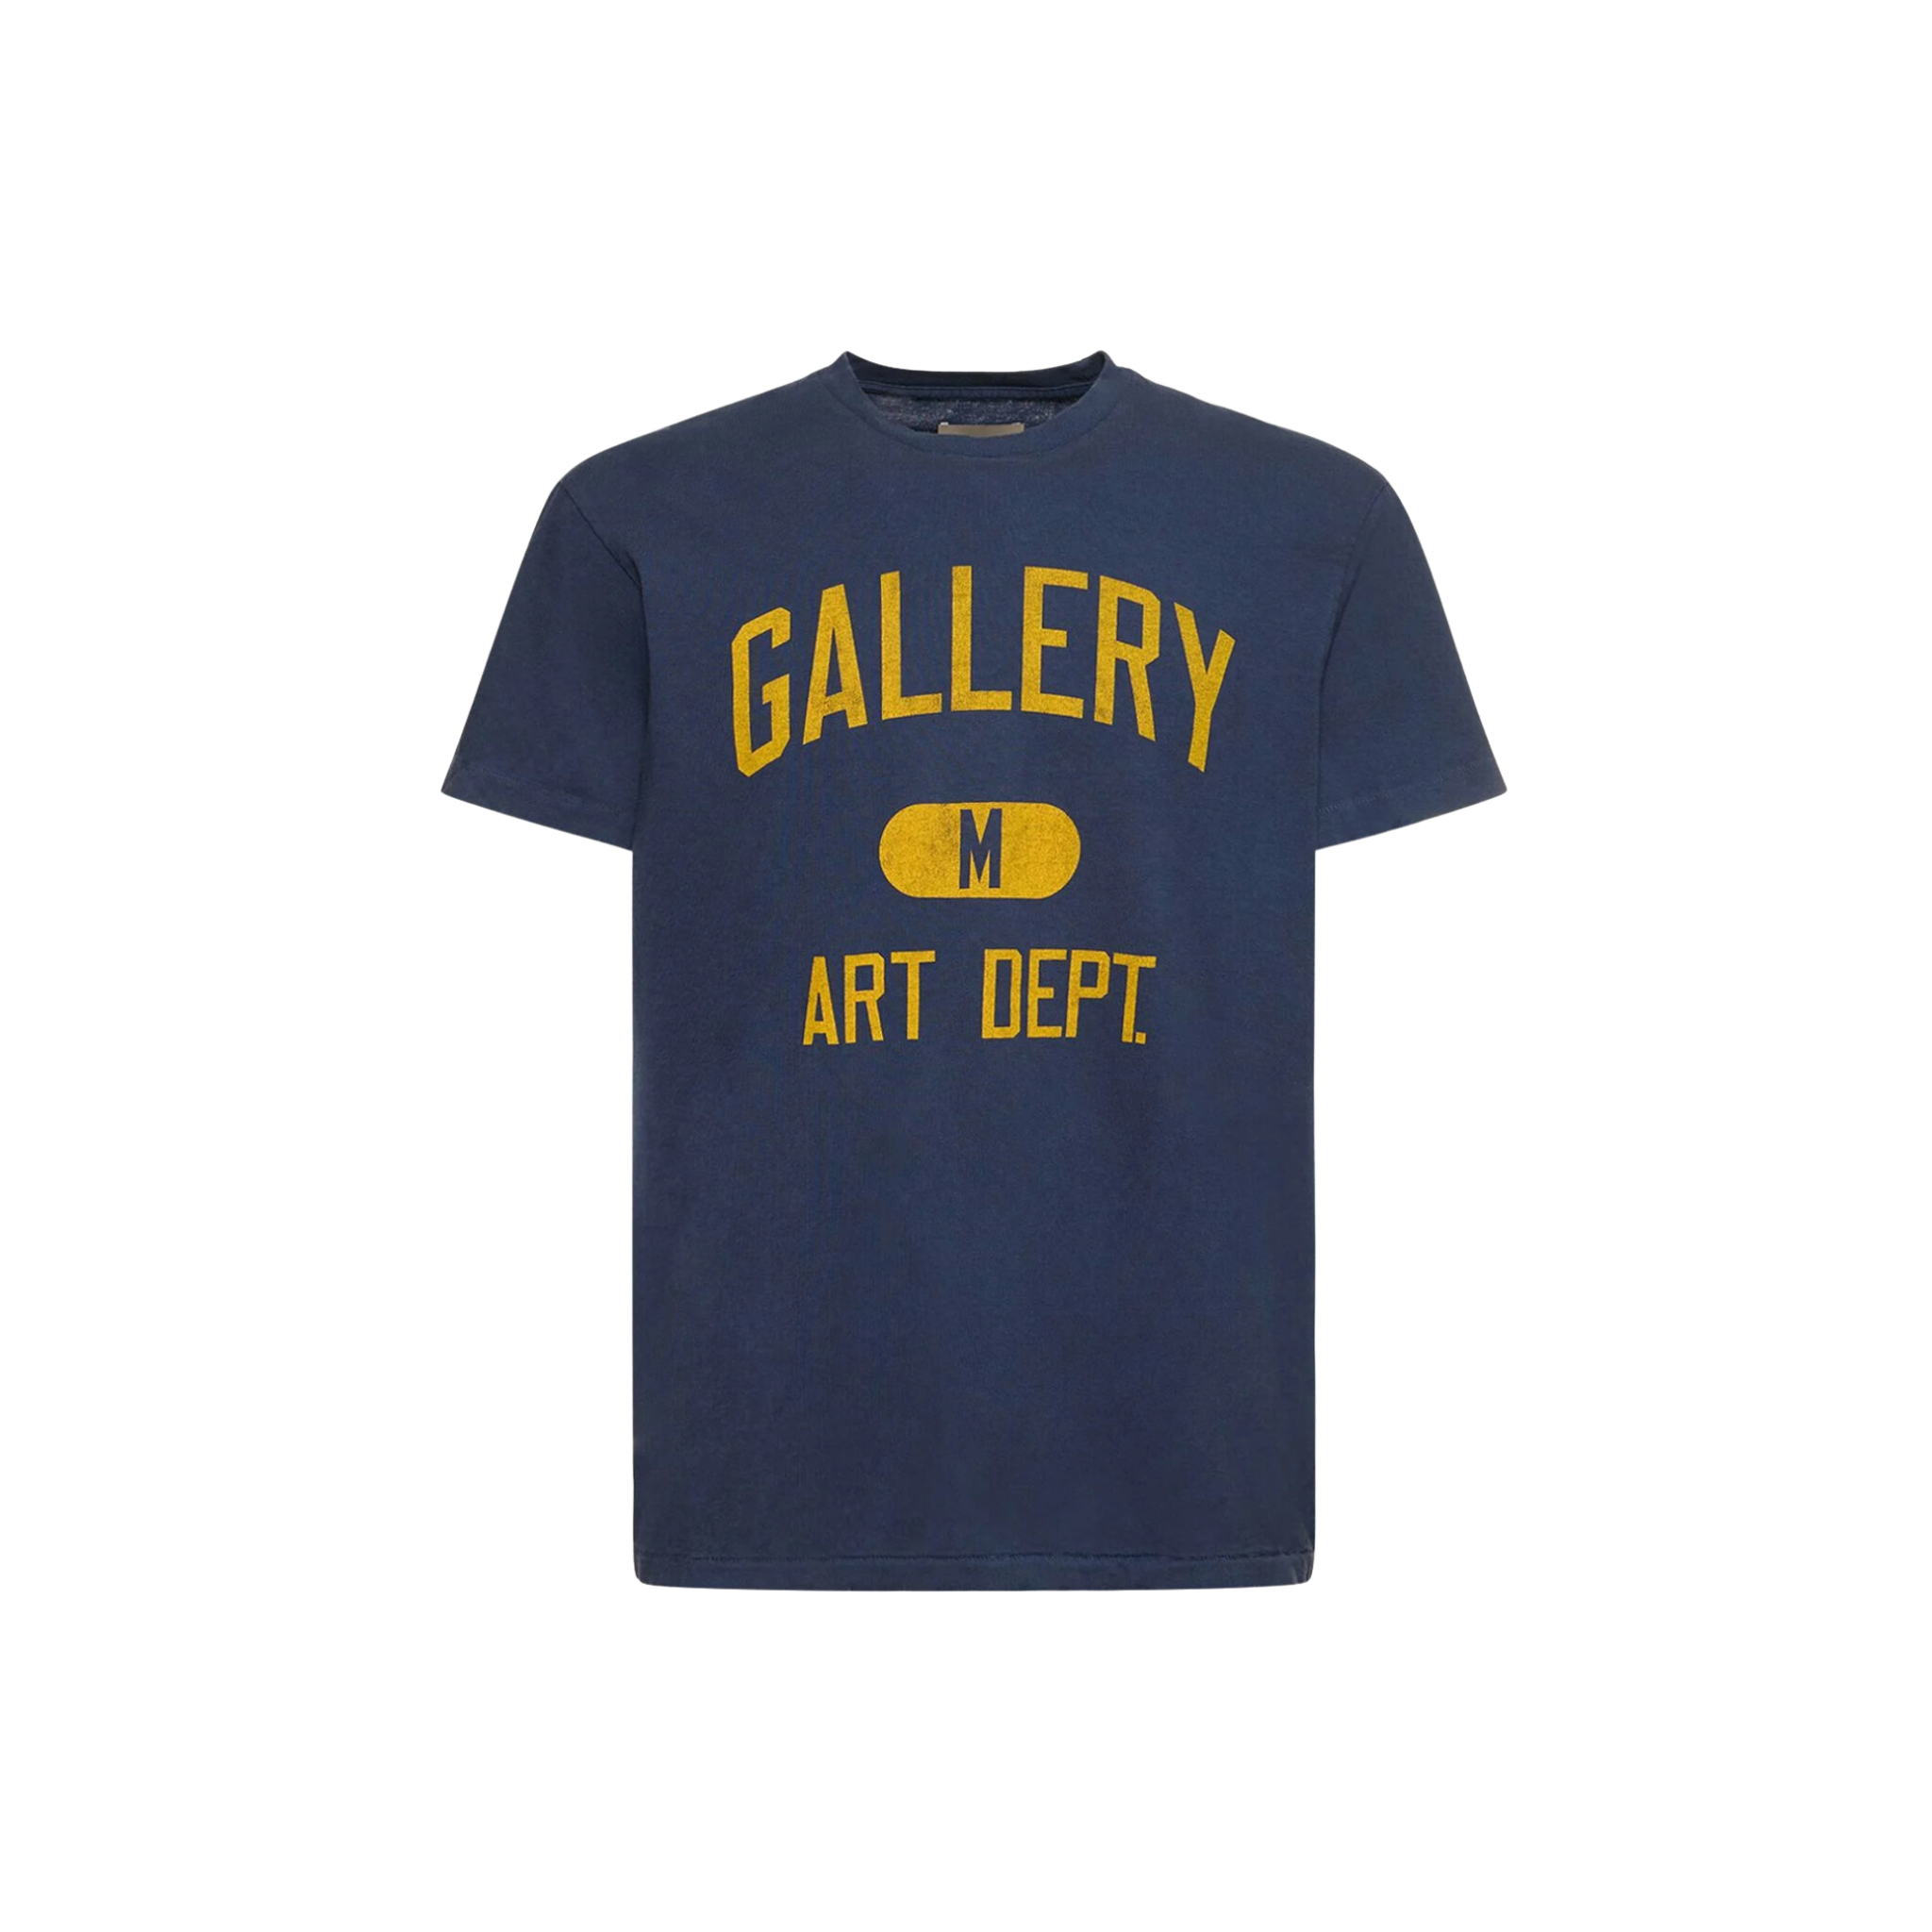 Gallery Dept. Art Dept. T-Shirt